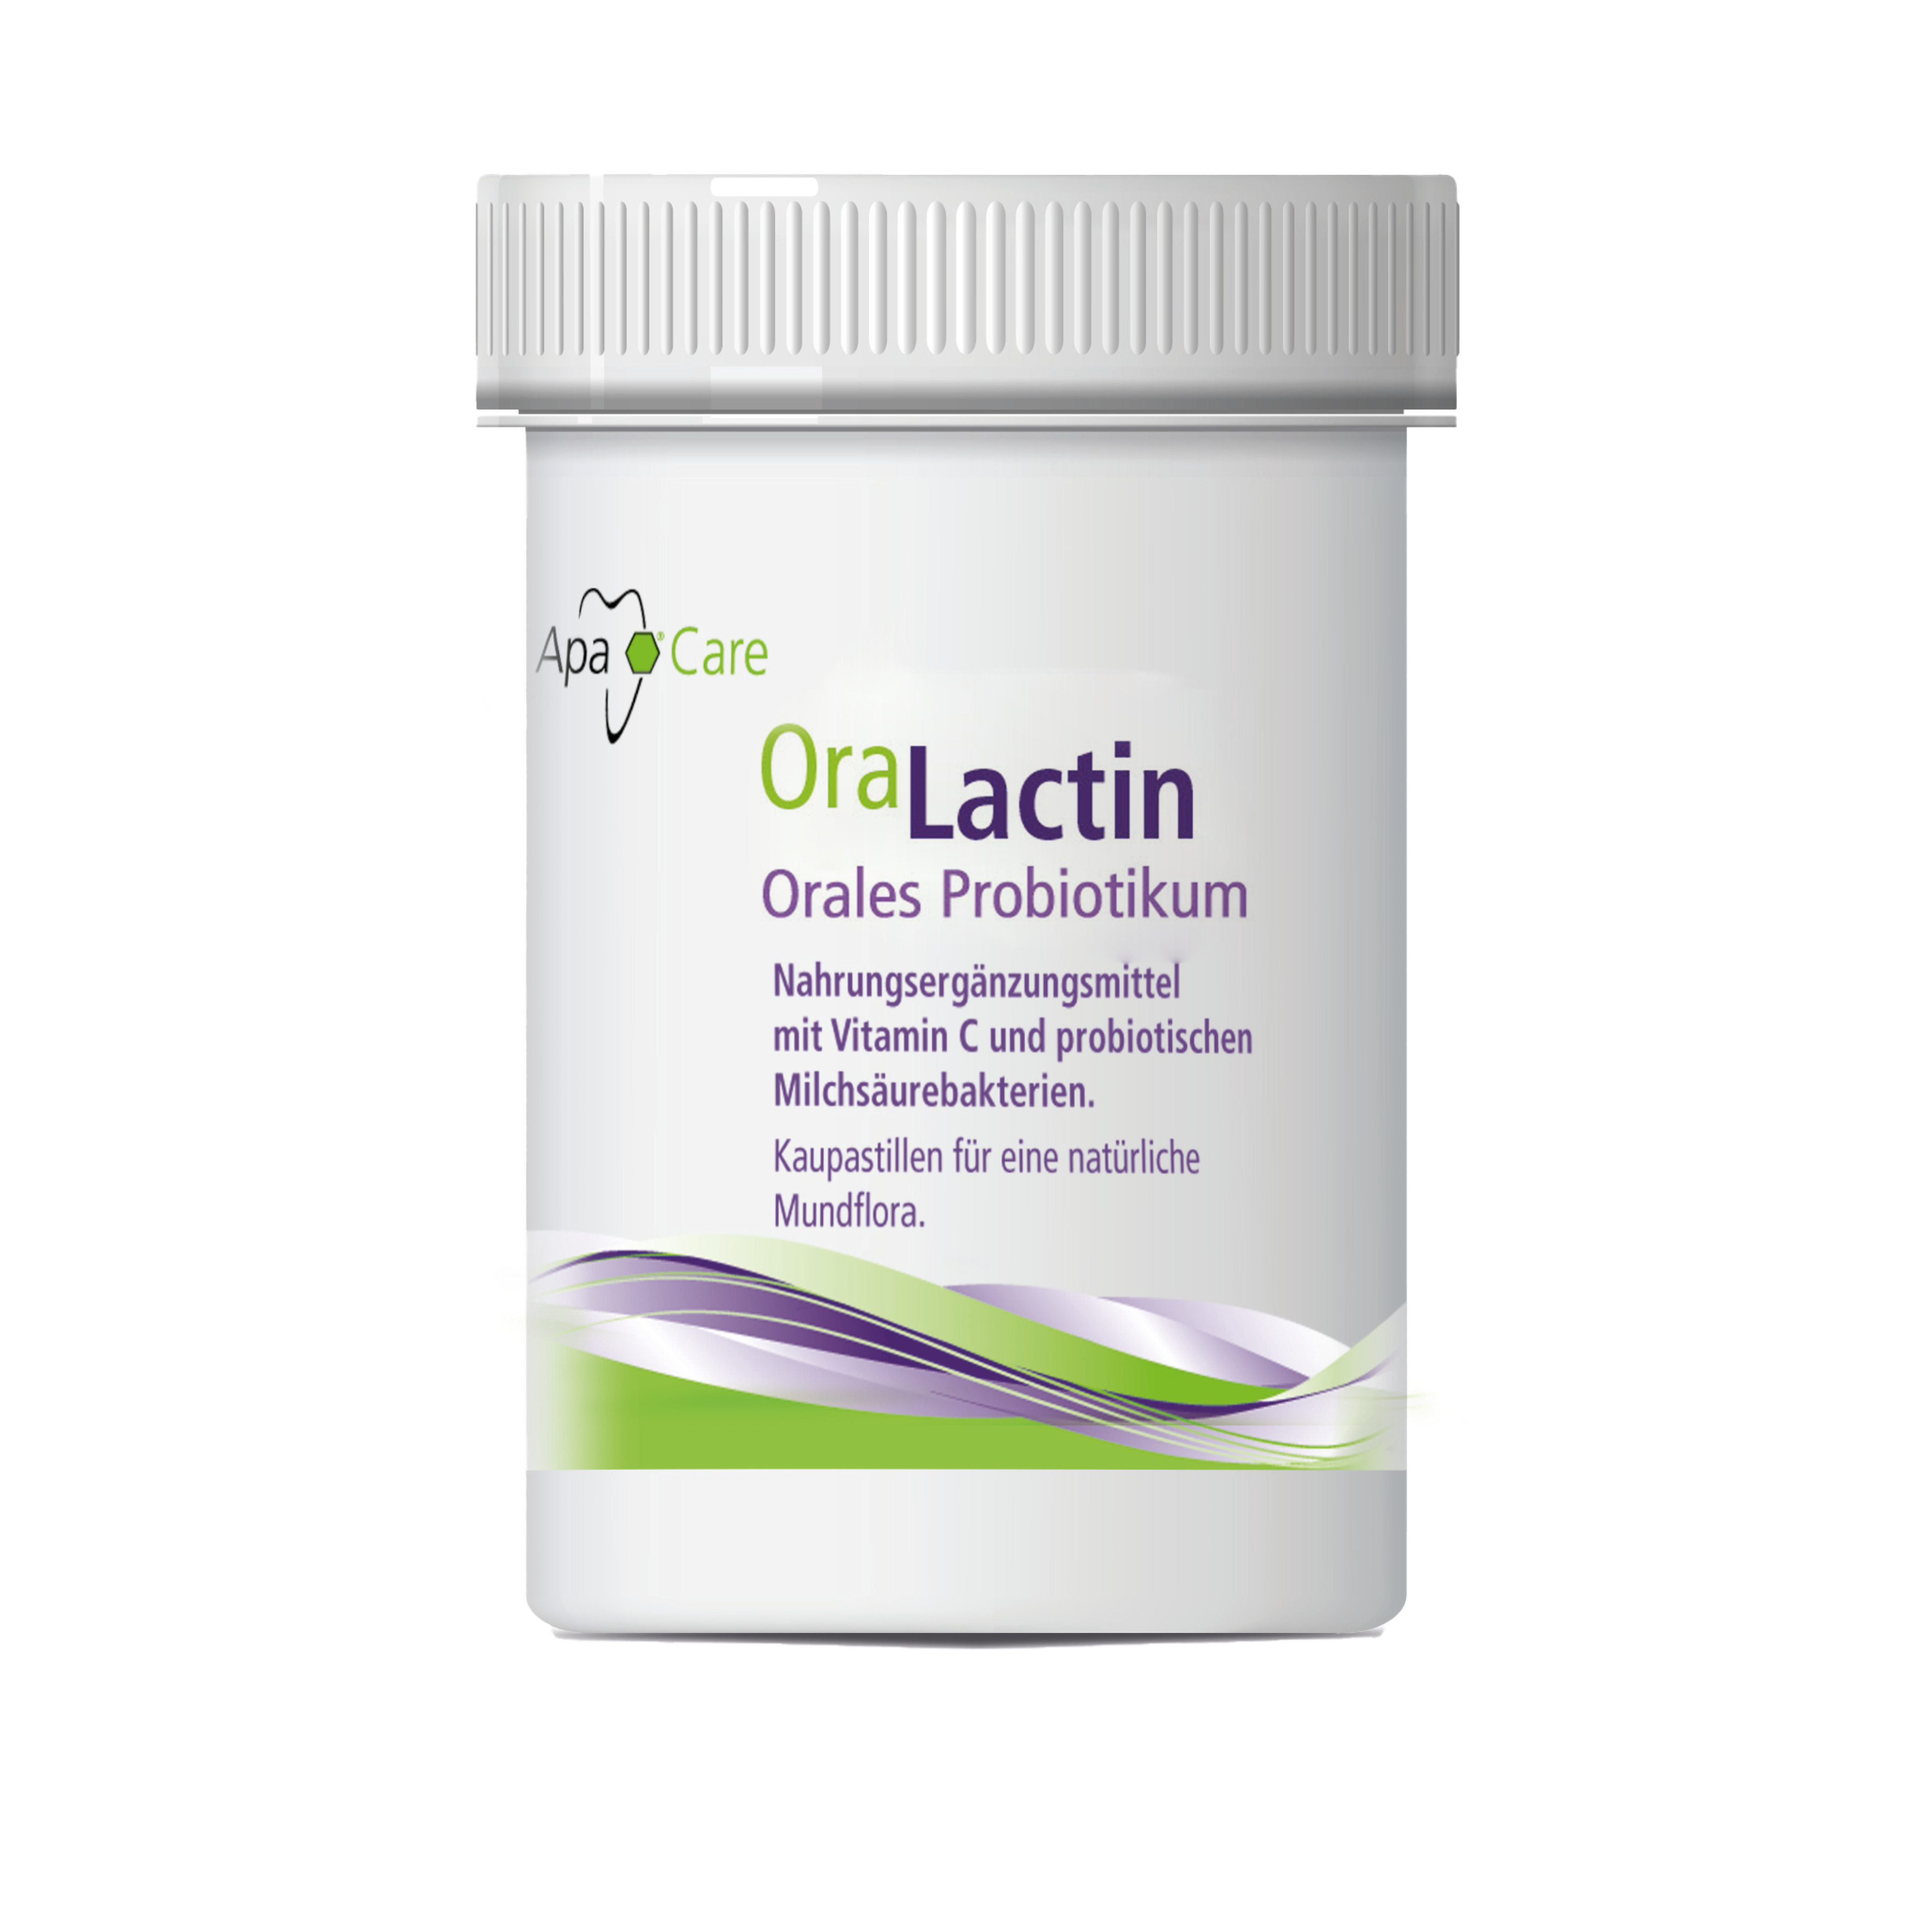  OraLactin Chewable pastilles Oral probiotic